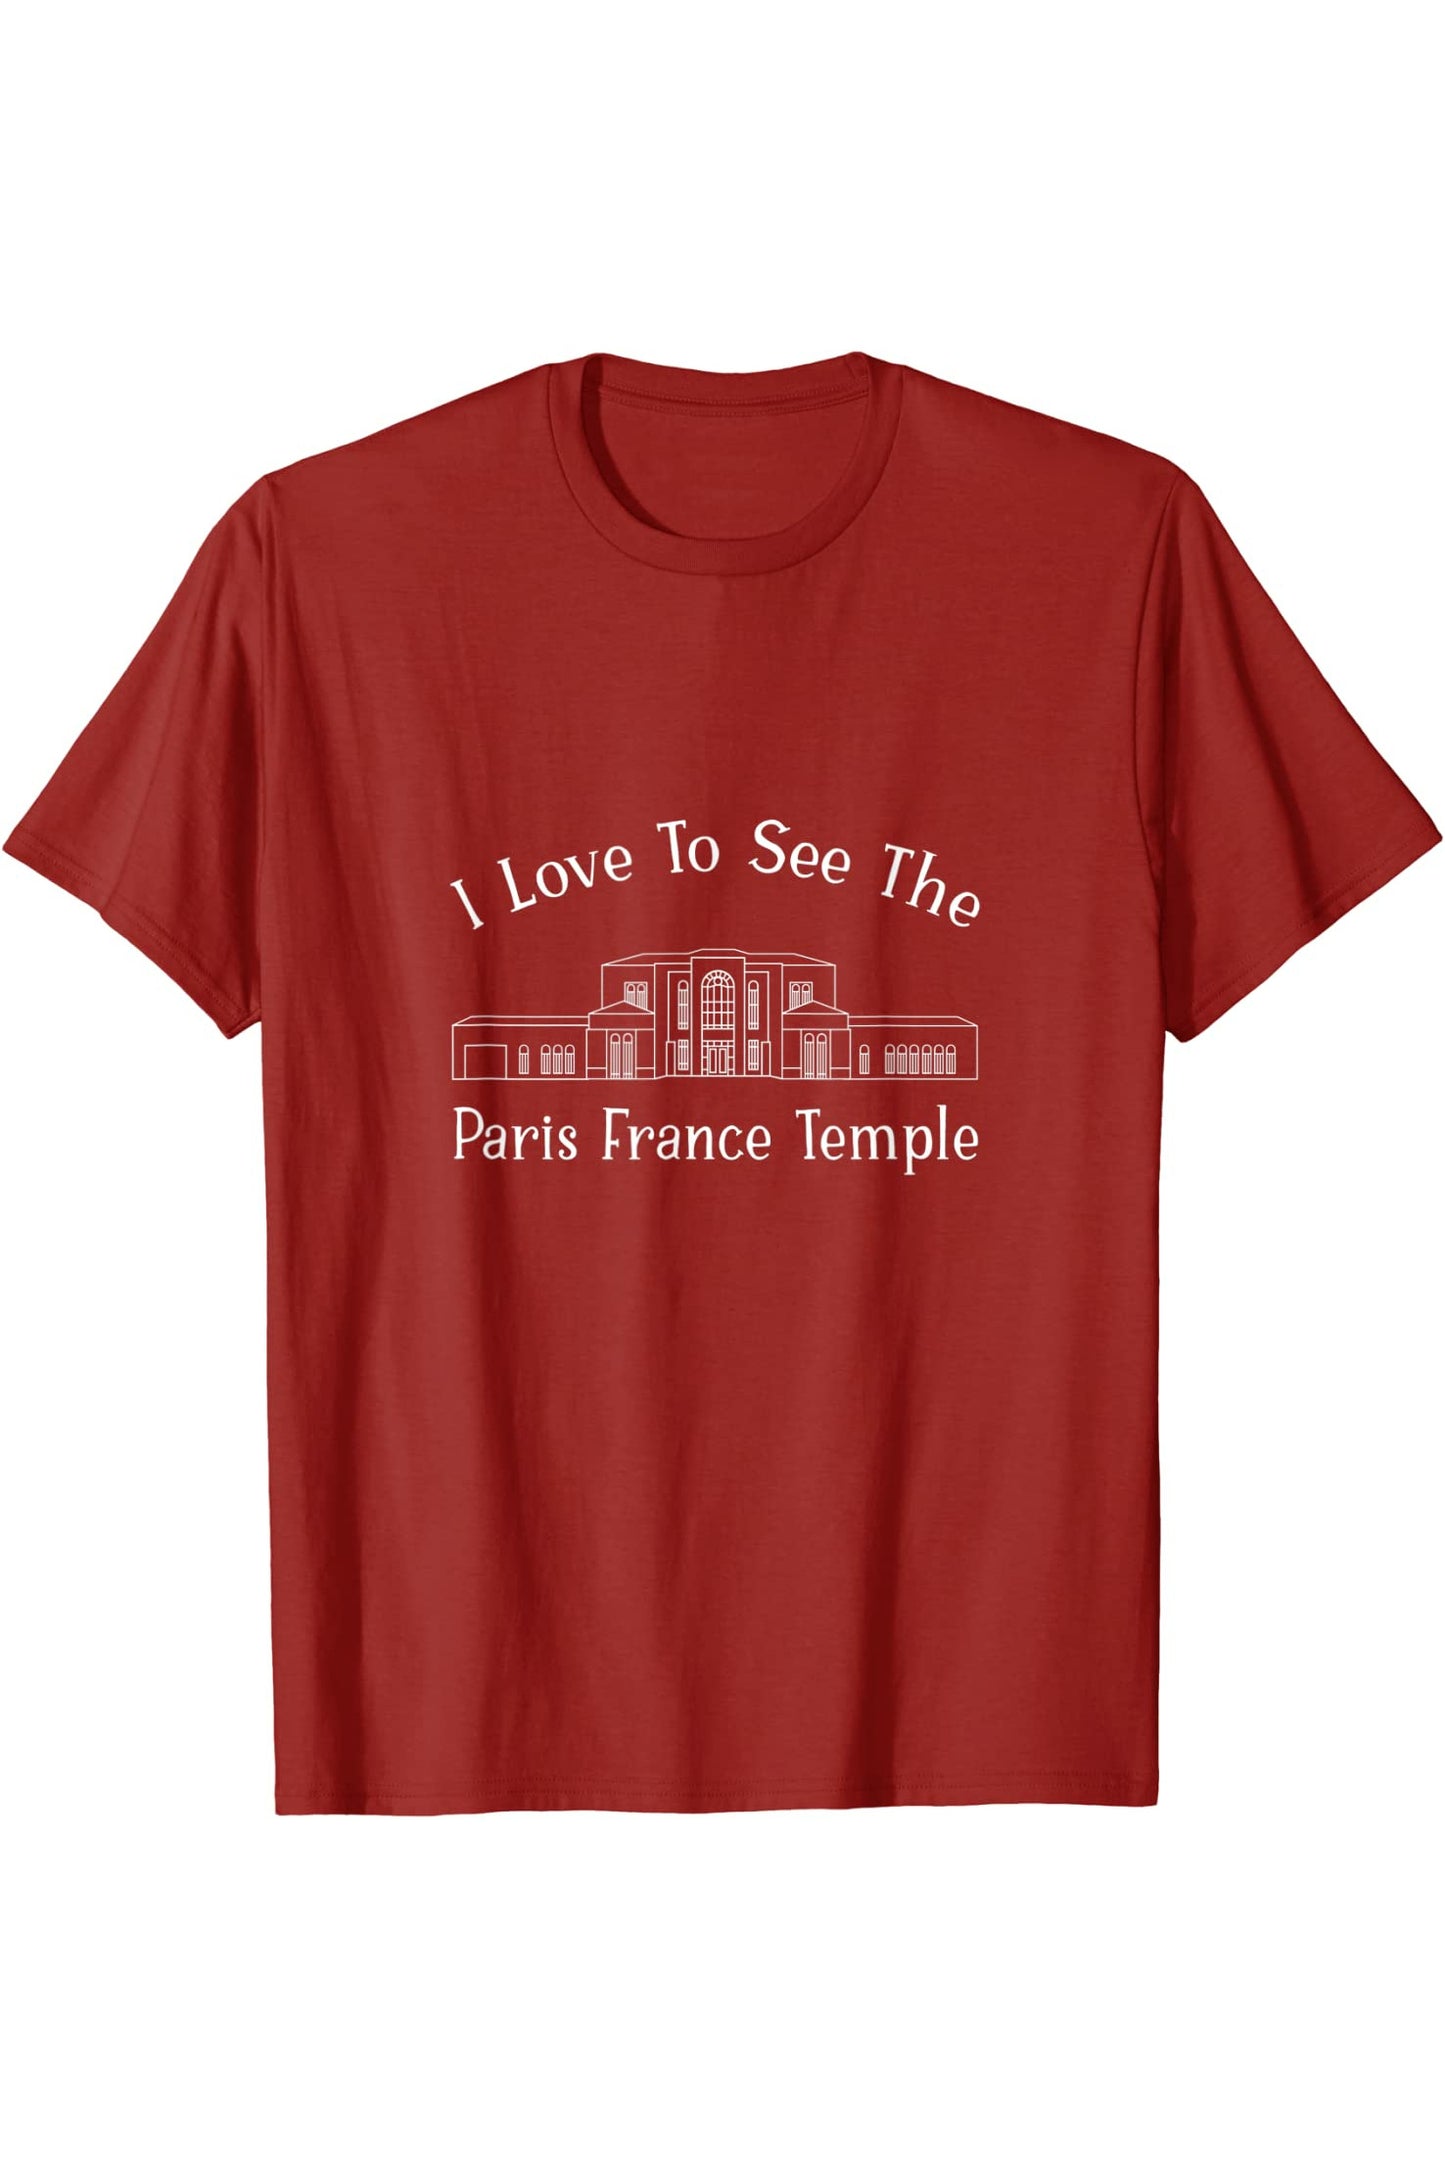 Parigi Francia Tempio, mi piace vedere il mio tempio, felice T-Shirt